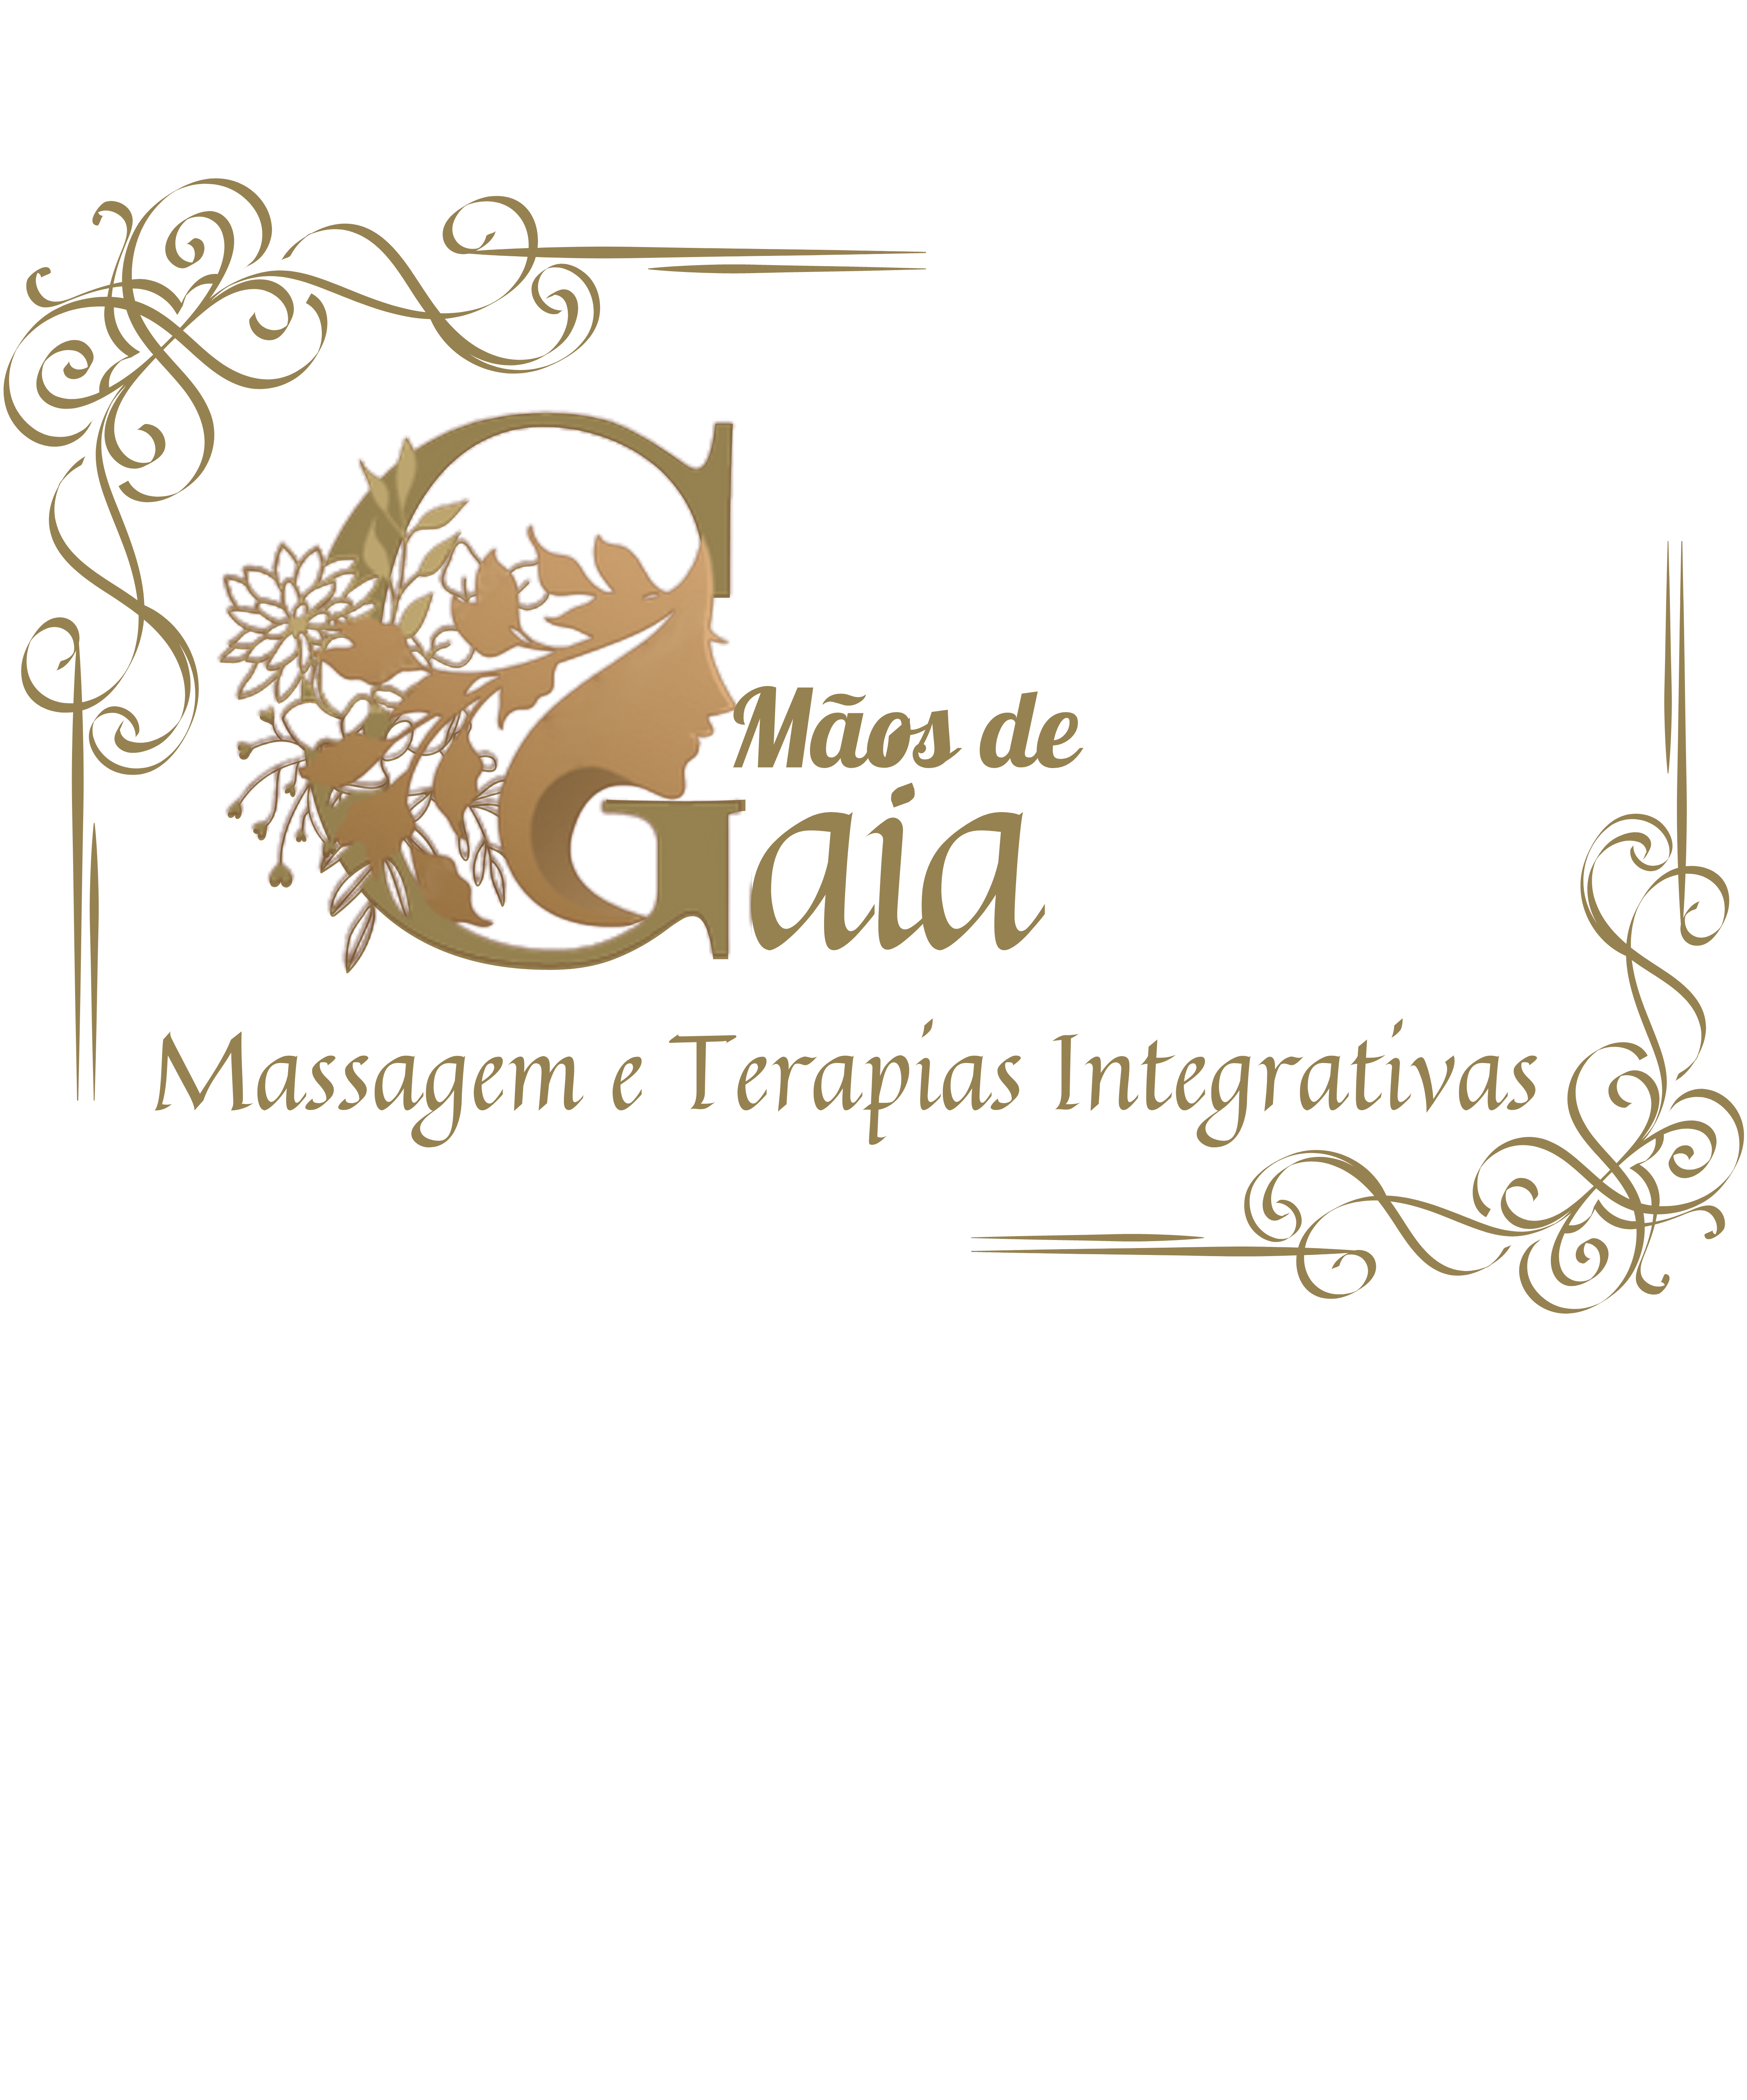 Maos de Gaia Massagem e terapias Integrativas